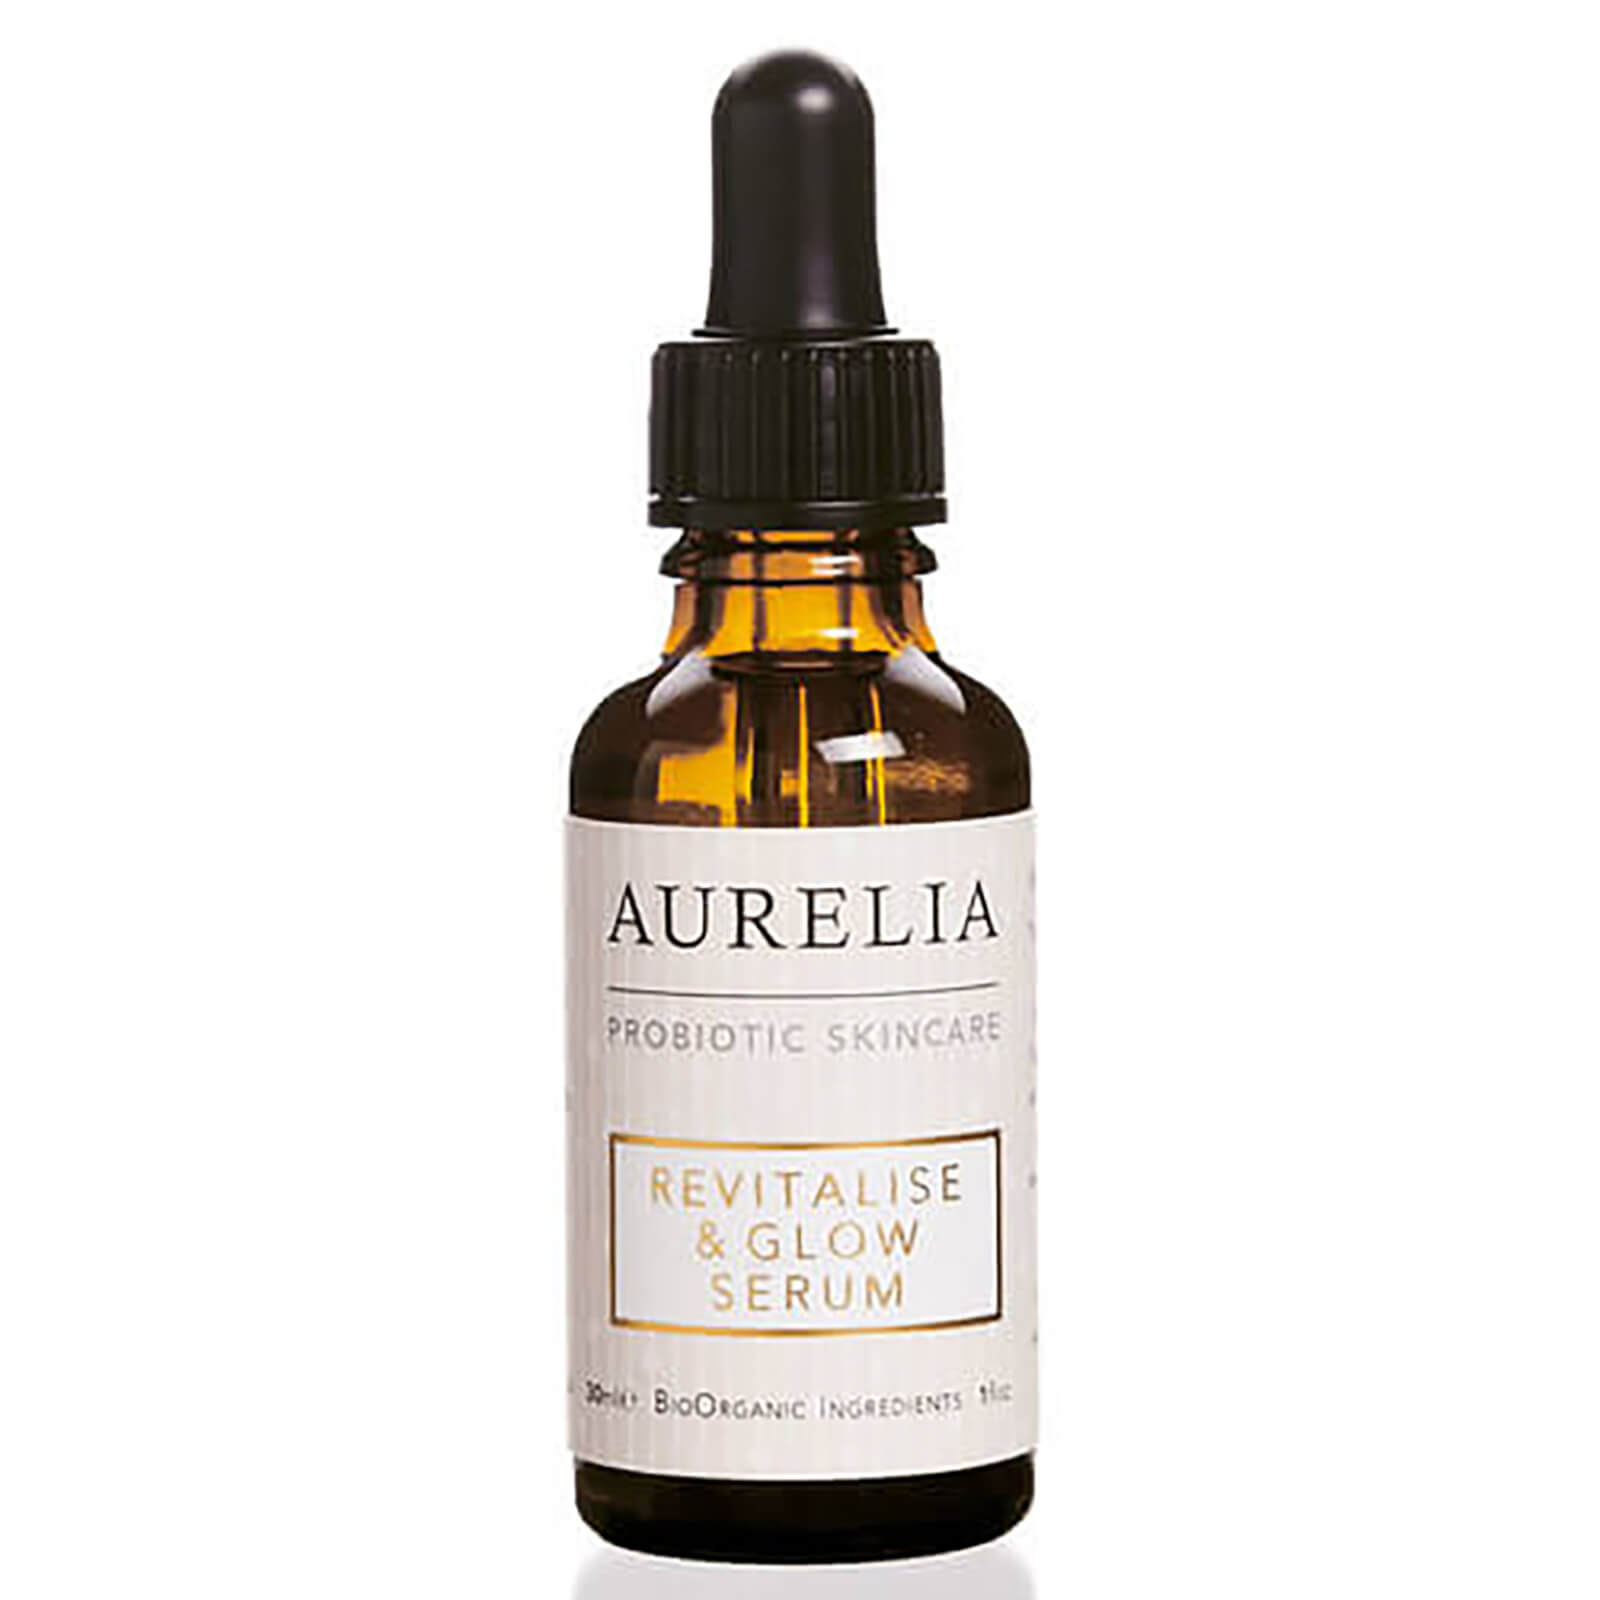 Aurelia Probiotic Skincare Revitalise & Glow Serum 30ml